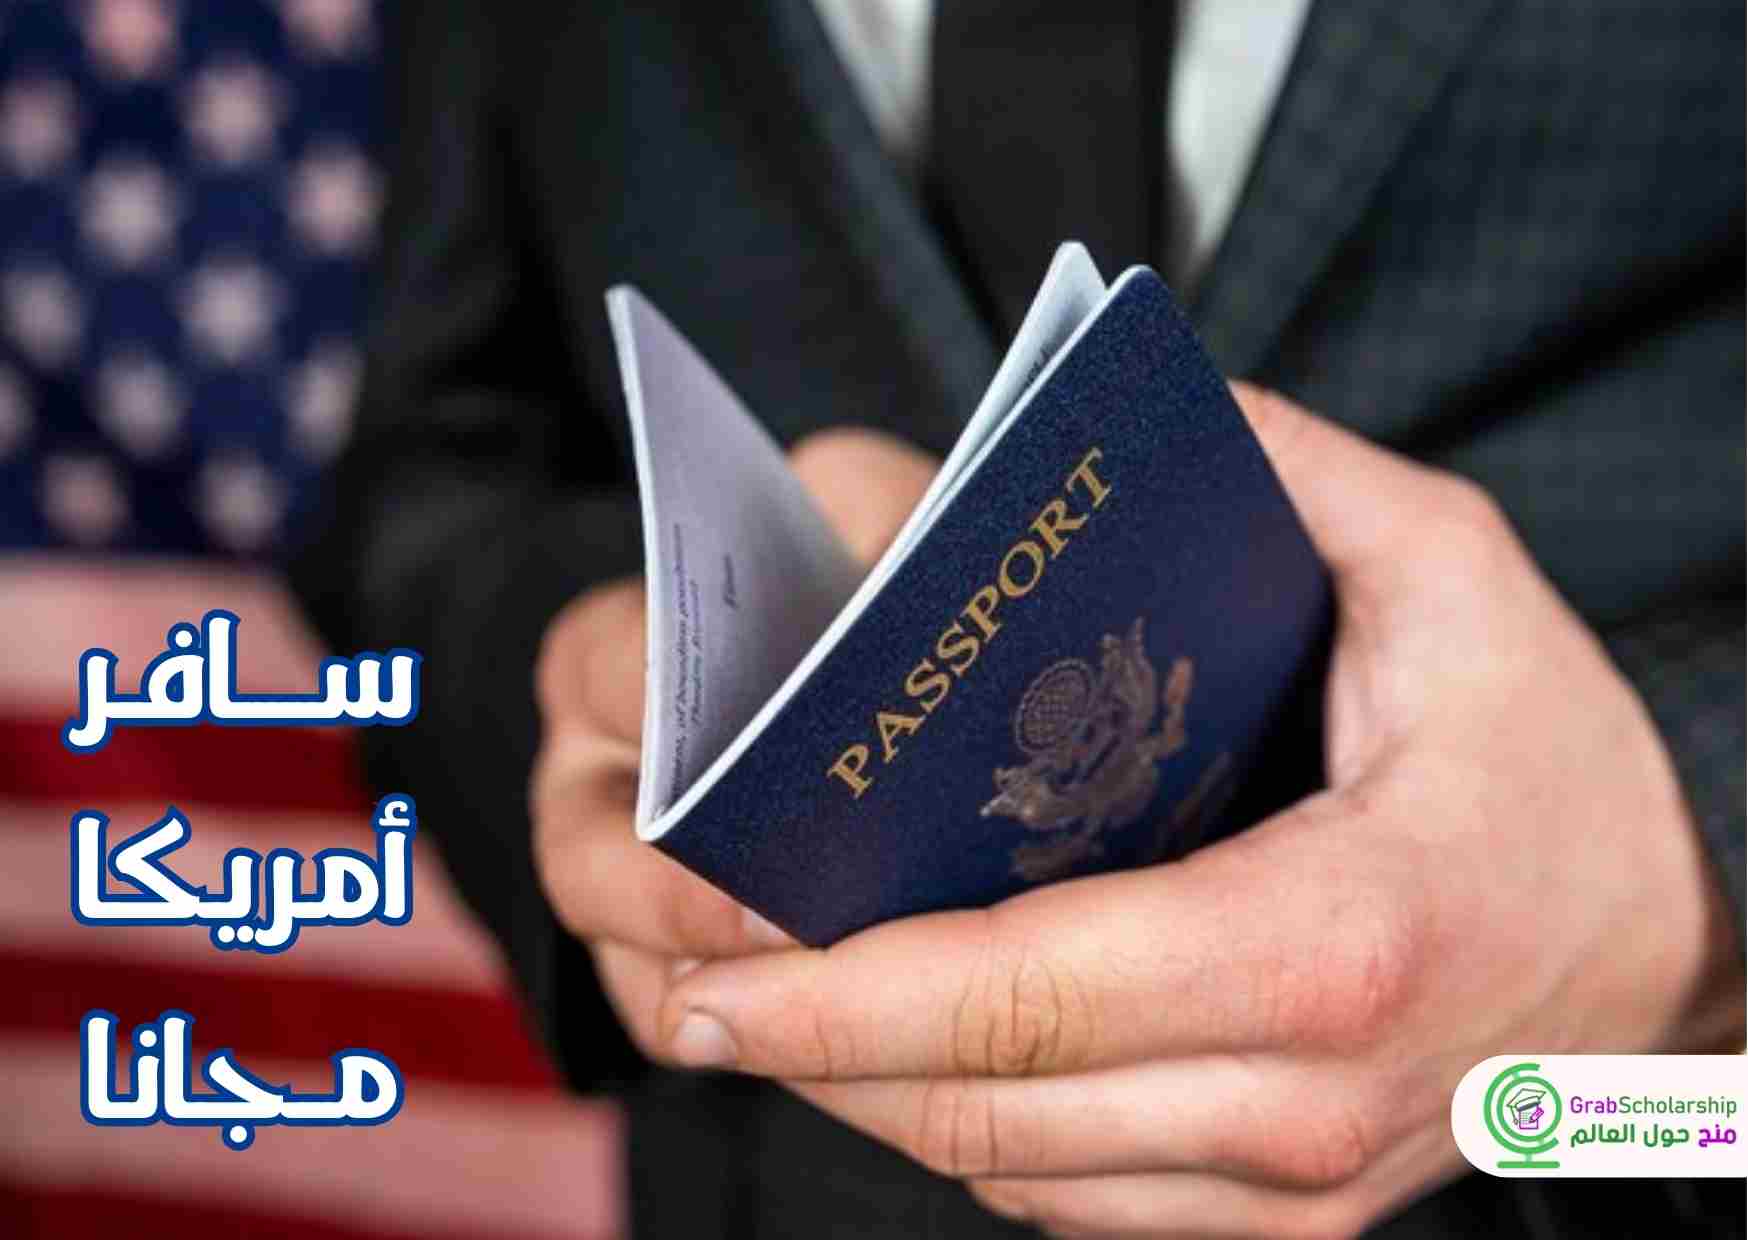 السفر المجاني الي امريكا شامل تذاكر الطيران والإقامة المجانية